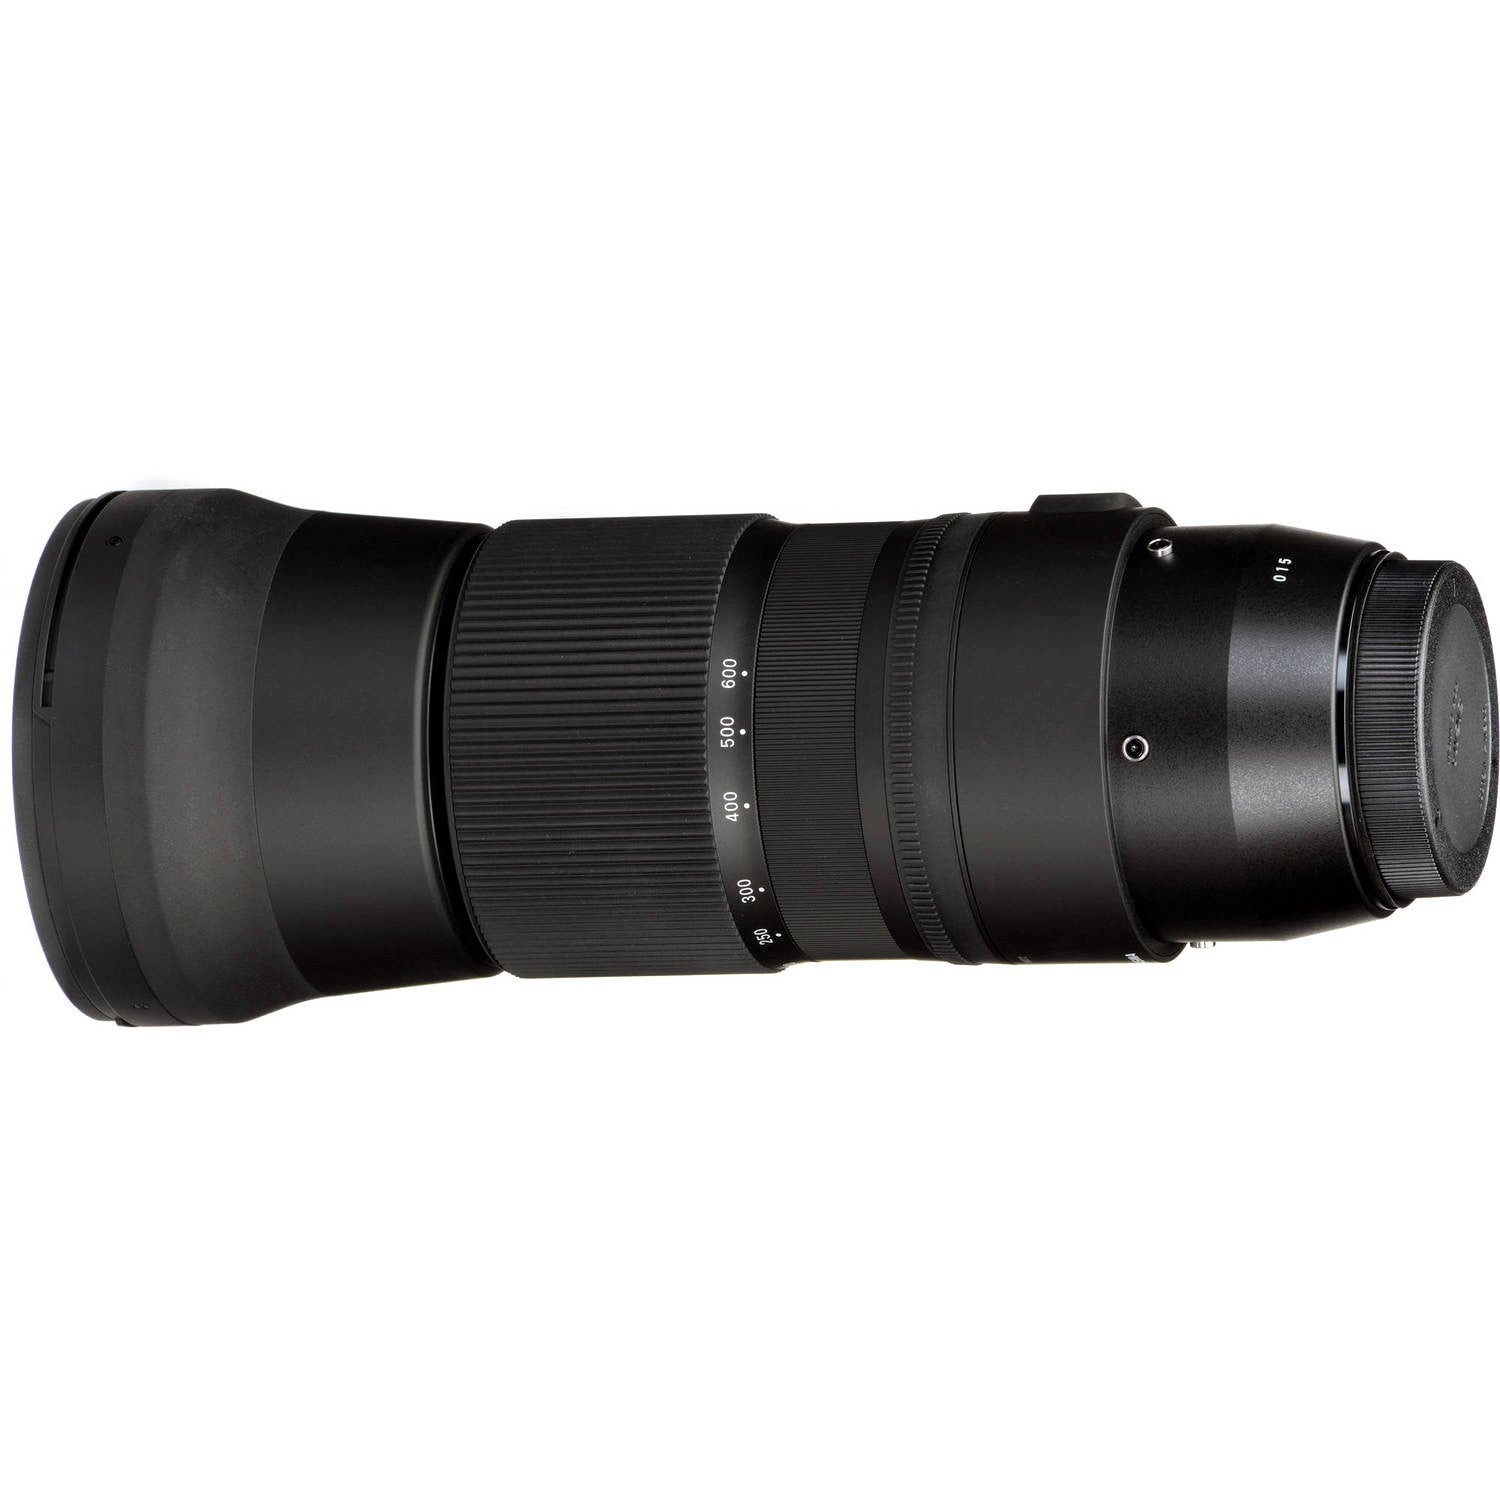 Sigma 150-600mm F5-6.3 DG OS HSM Contemporary Lens for Nikon F